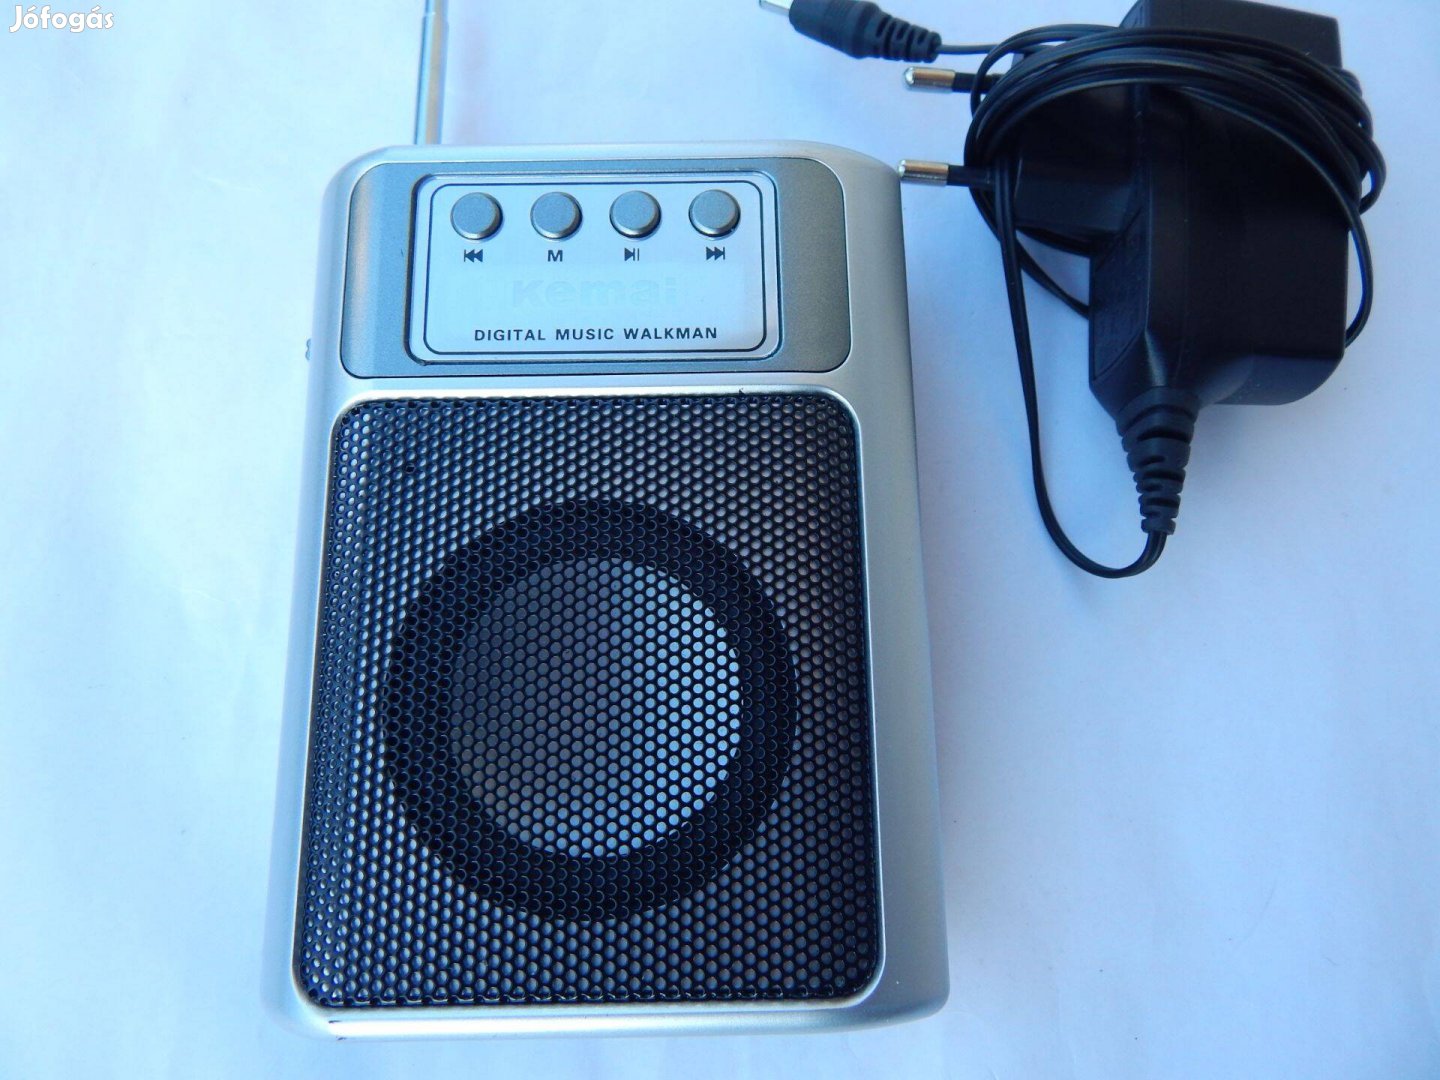 Kemai MD-809U Tipusú Hordozható FM Rádiós Digitális Walkman